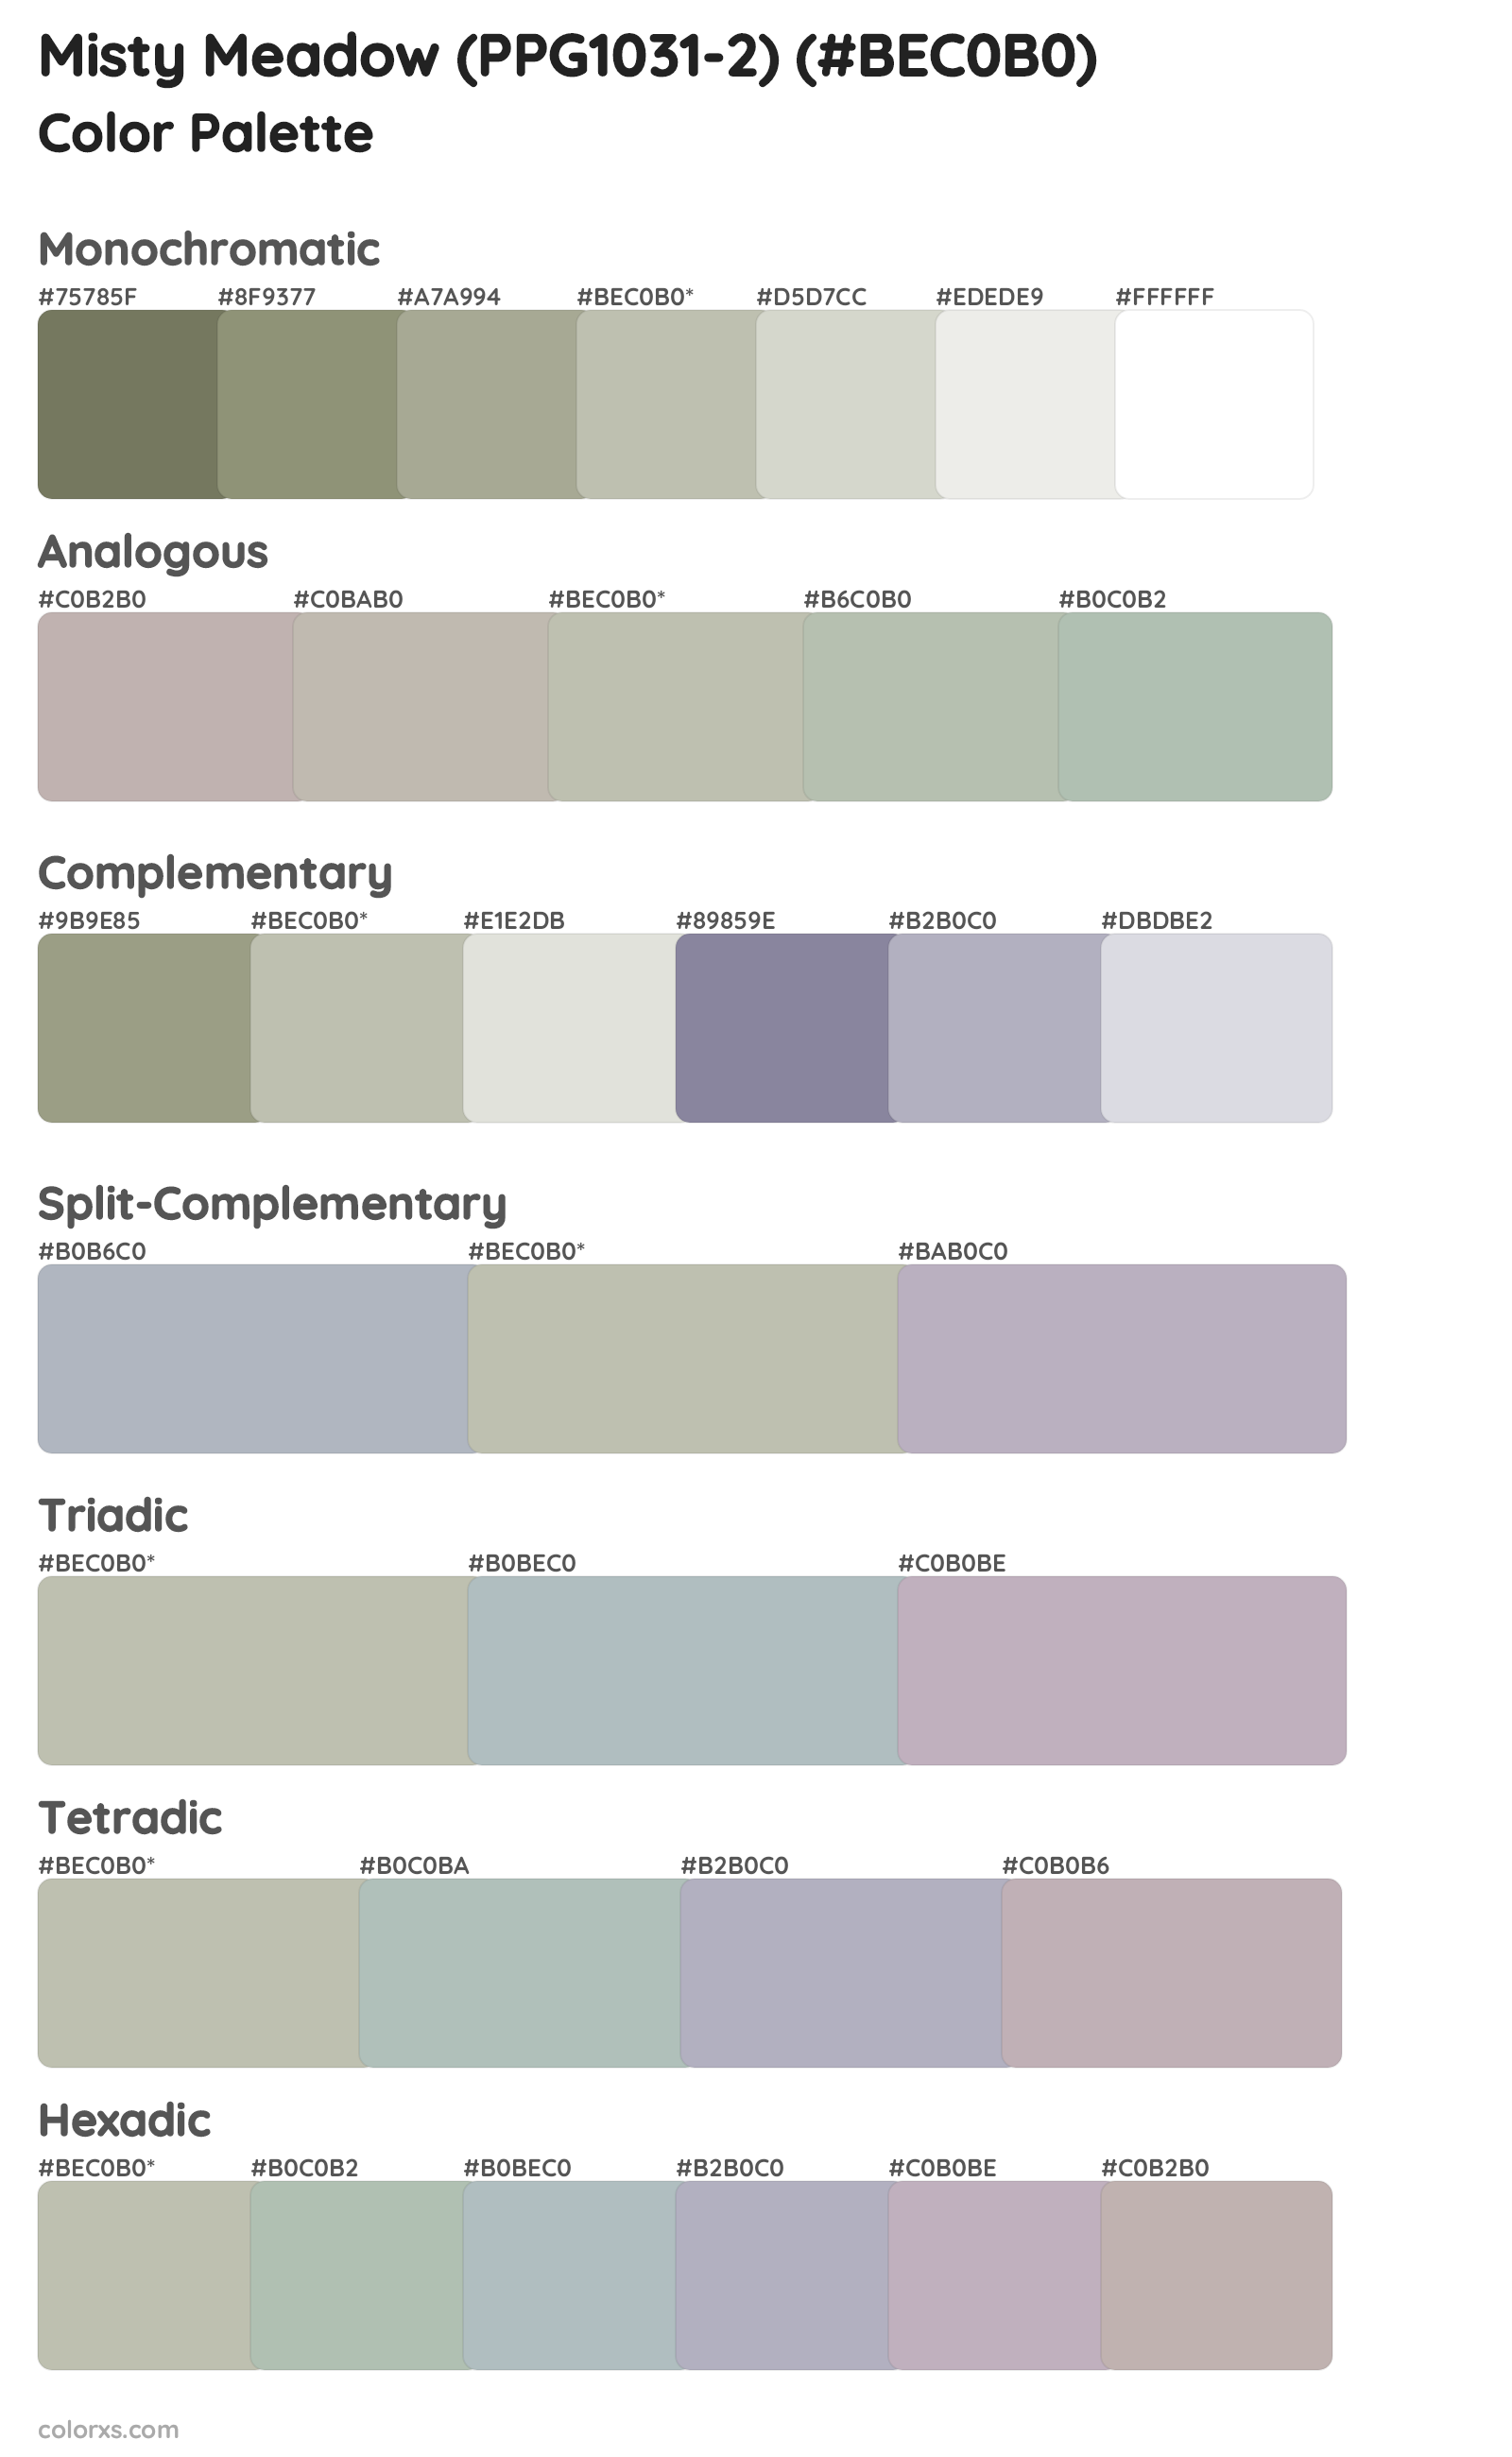 Misty Meadow (PPG1031-2) Color Scheme Palettes